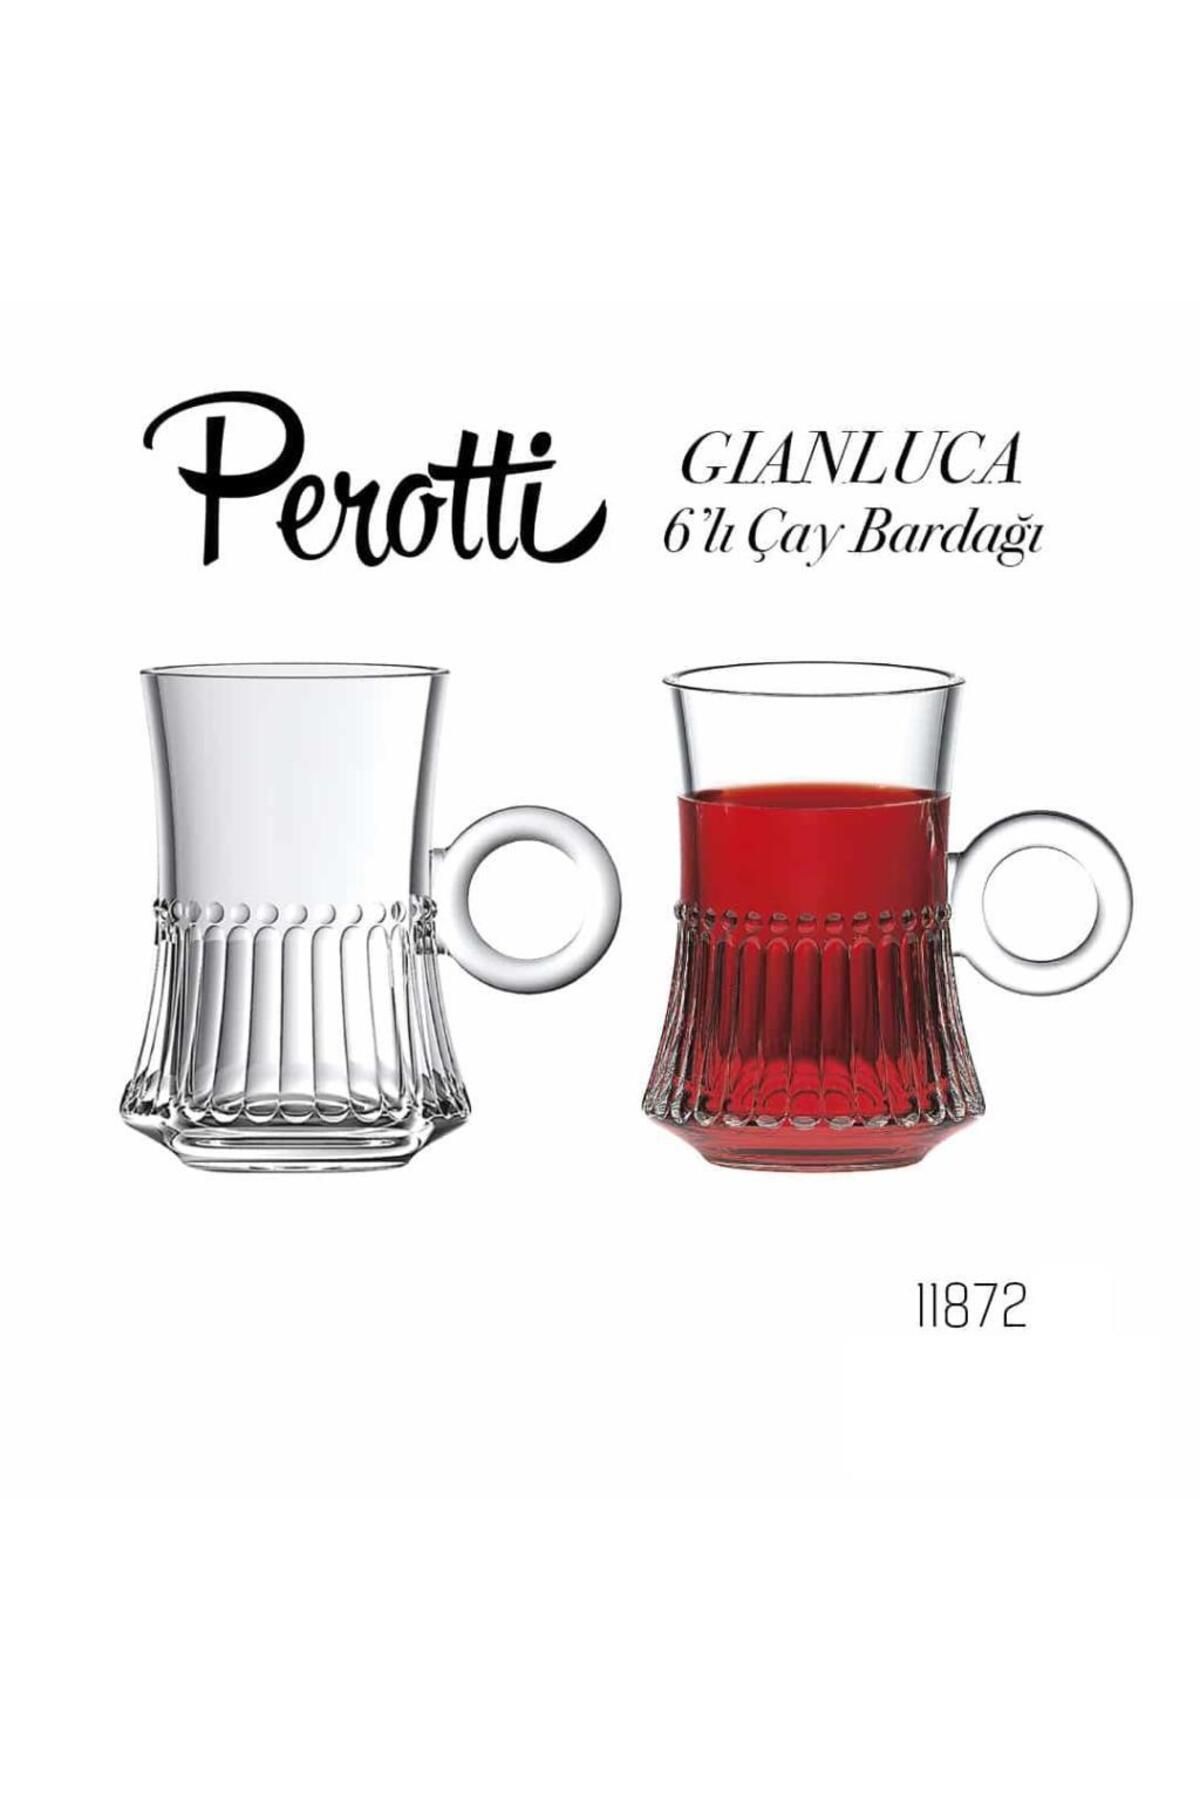 Perotti Gianluca 6 Lı Çay Bardağı 11872